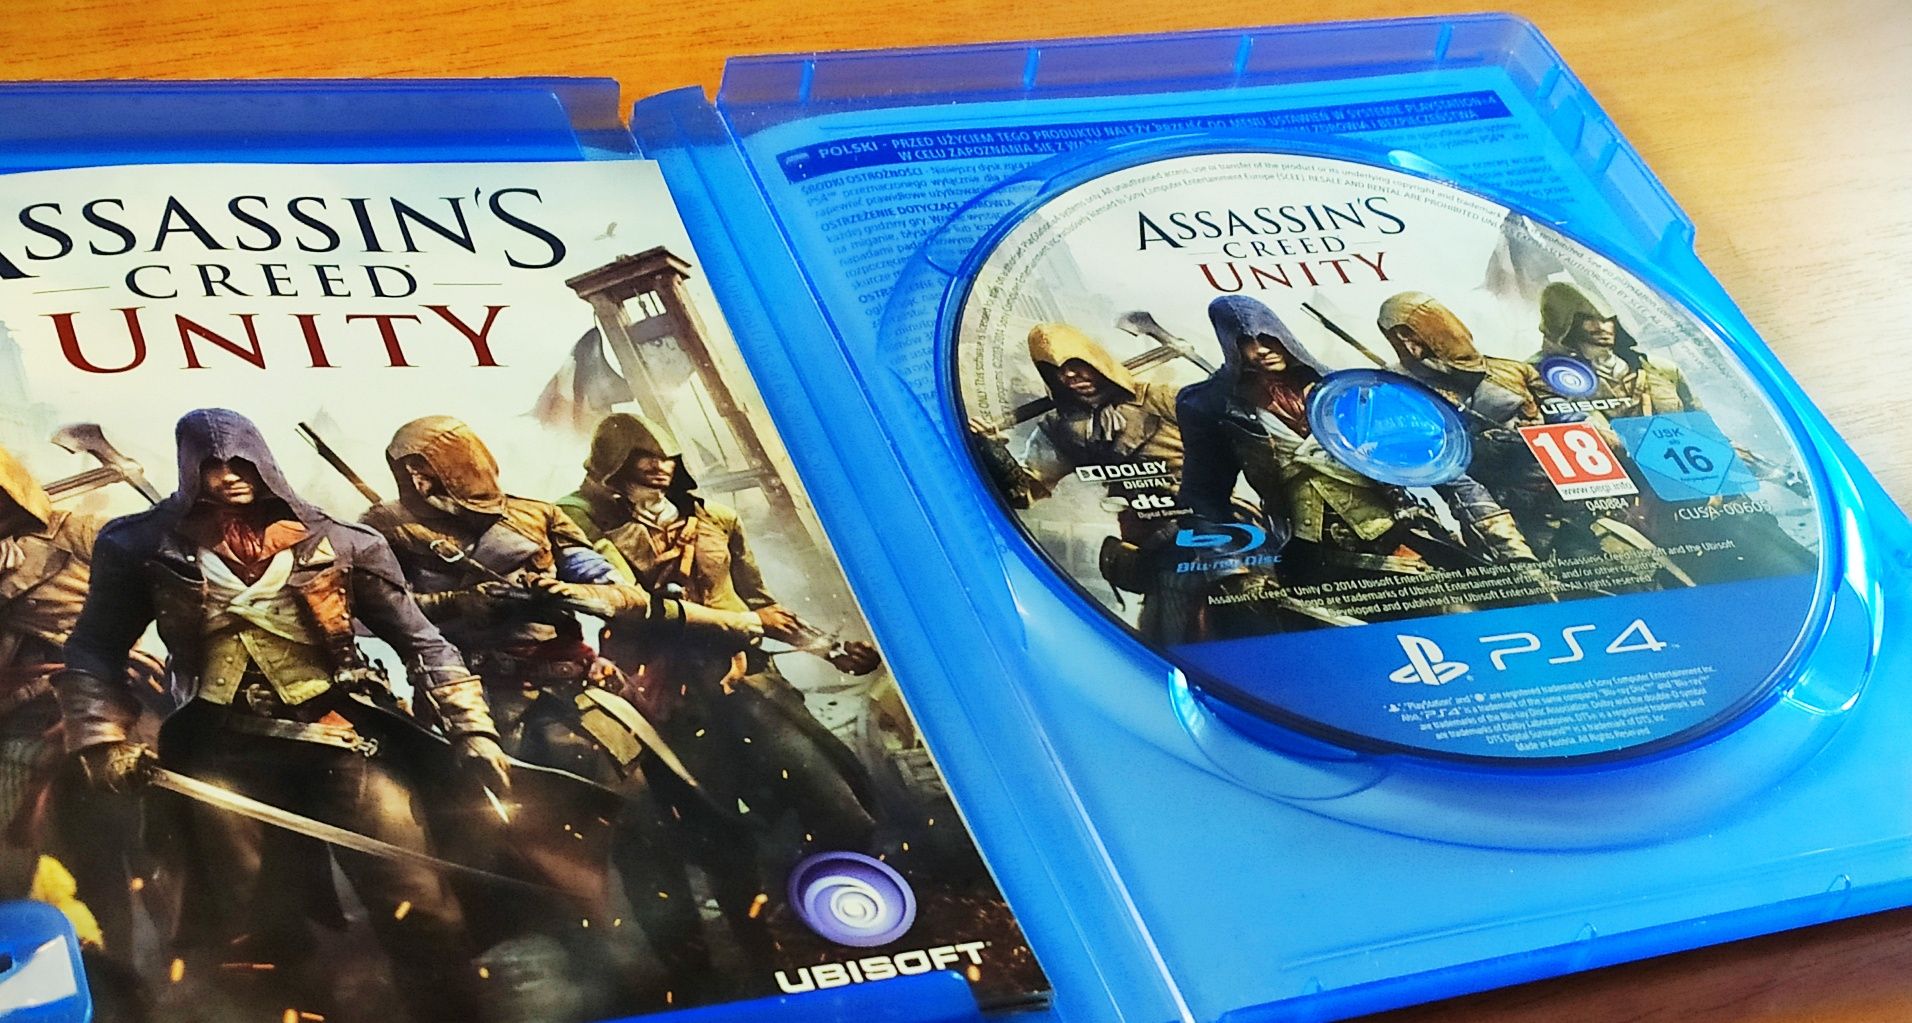 Gra Assassin's Creed Unity PS4